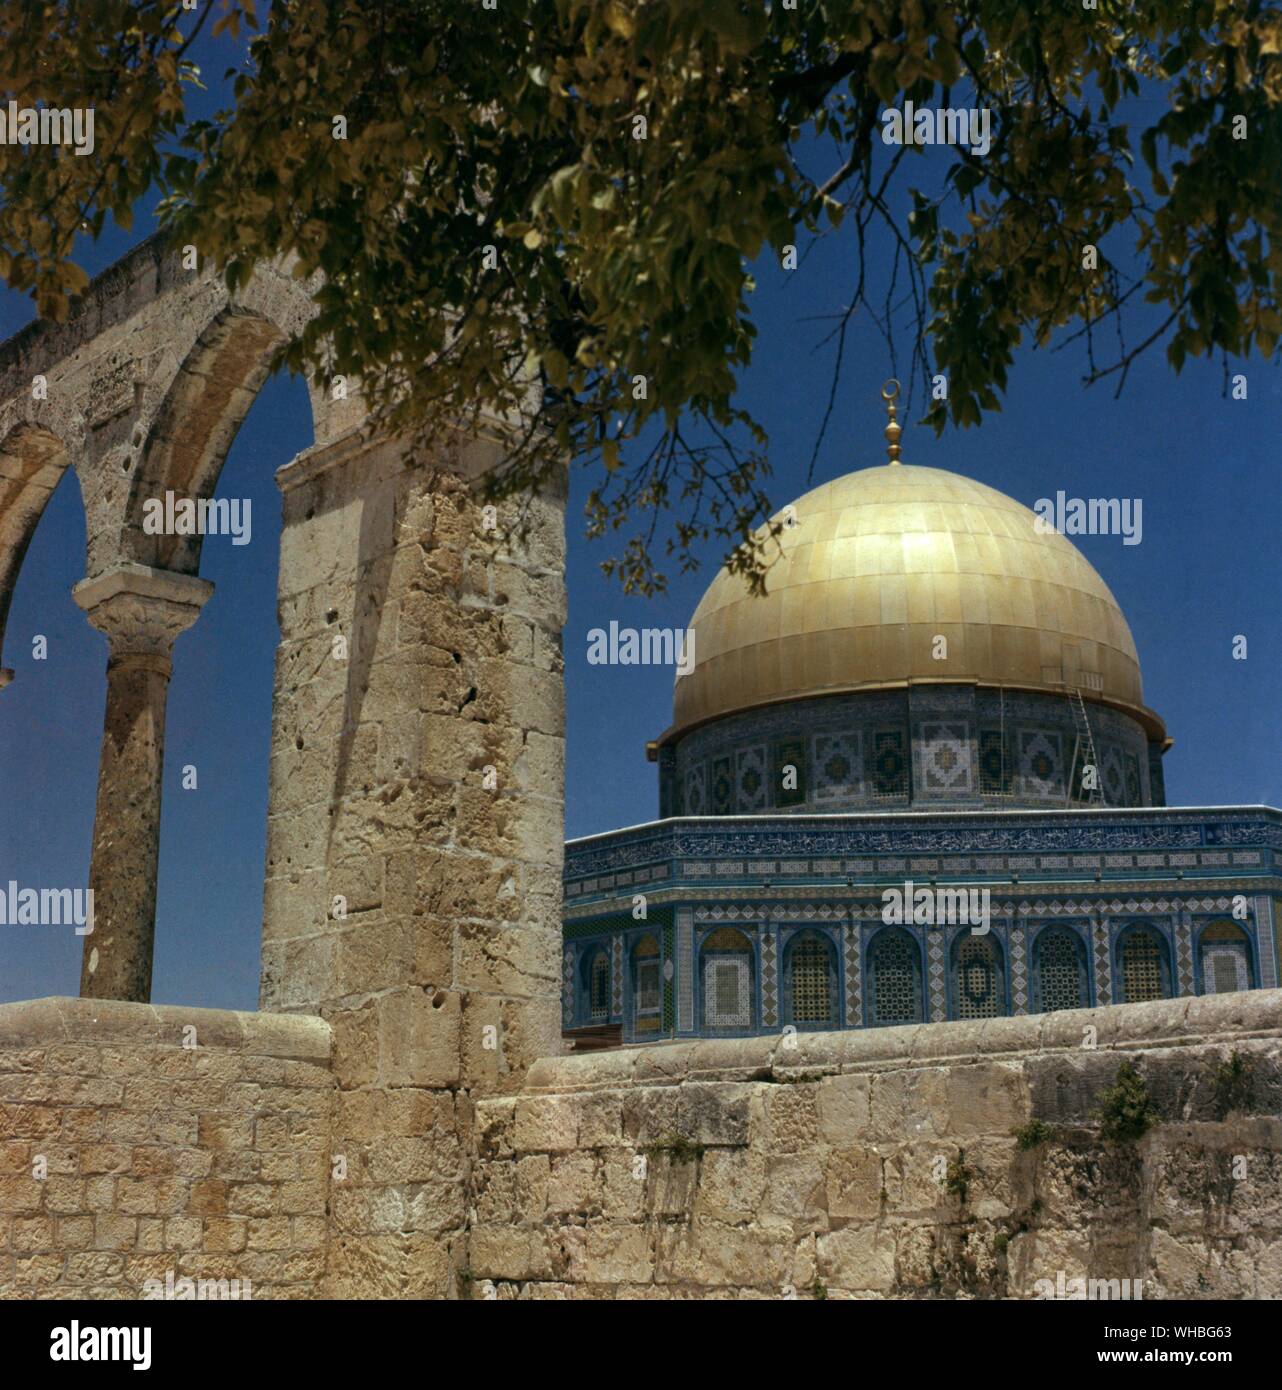 Cupola della roccia di Gerusalemme - La Cupola della roccia è un santuario islamico e un importante punto di riferimento situato sul Monte del Tempio a Gerusalemme. Essa è stata completata nel 691 che lo rende il più antico edificio islamico nel mondo.. Foto Stock